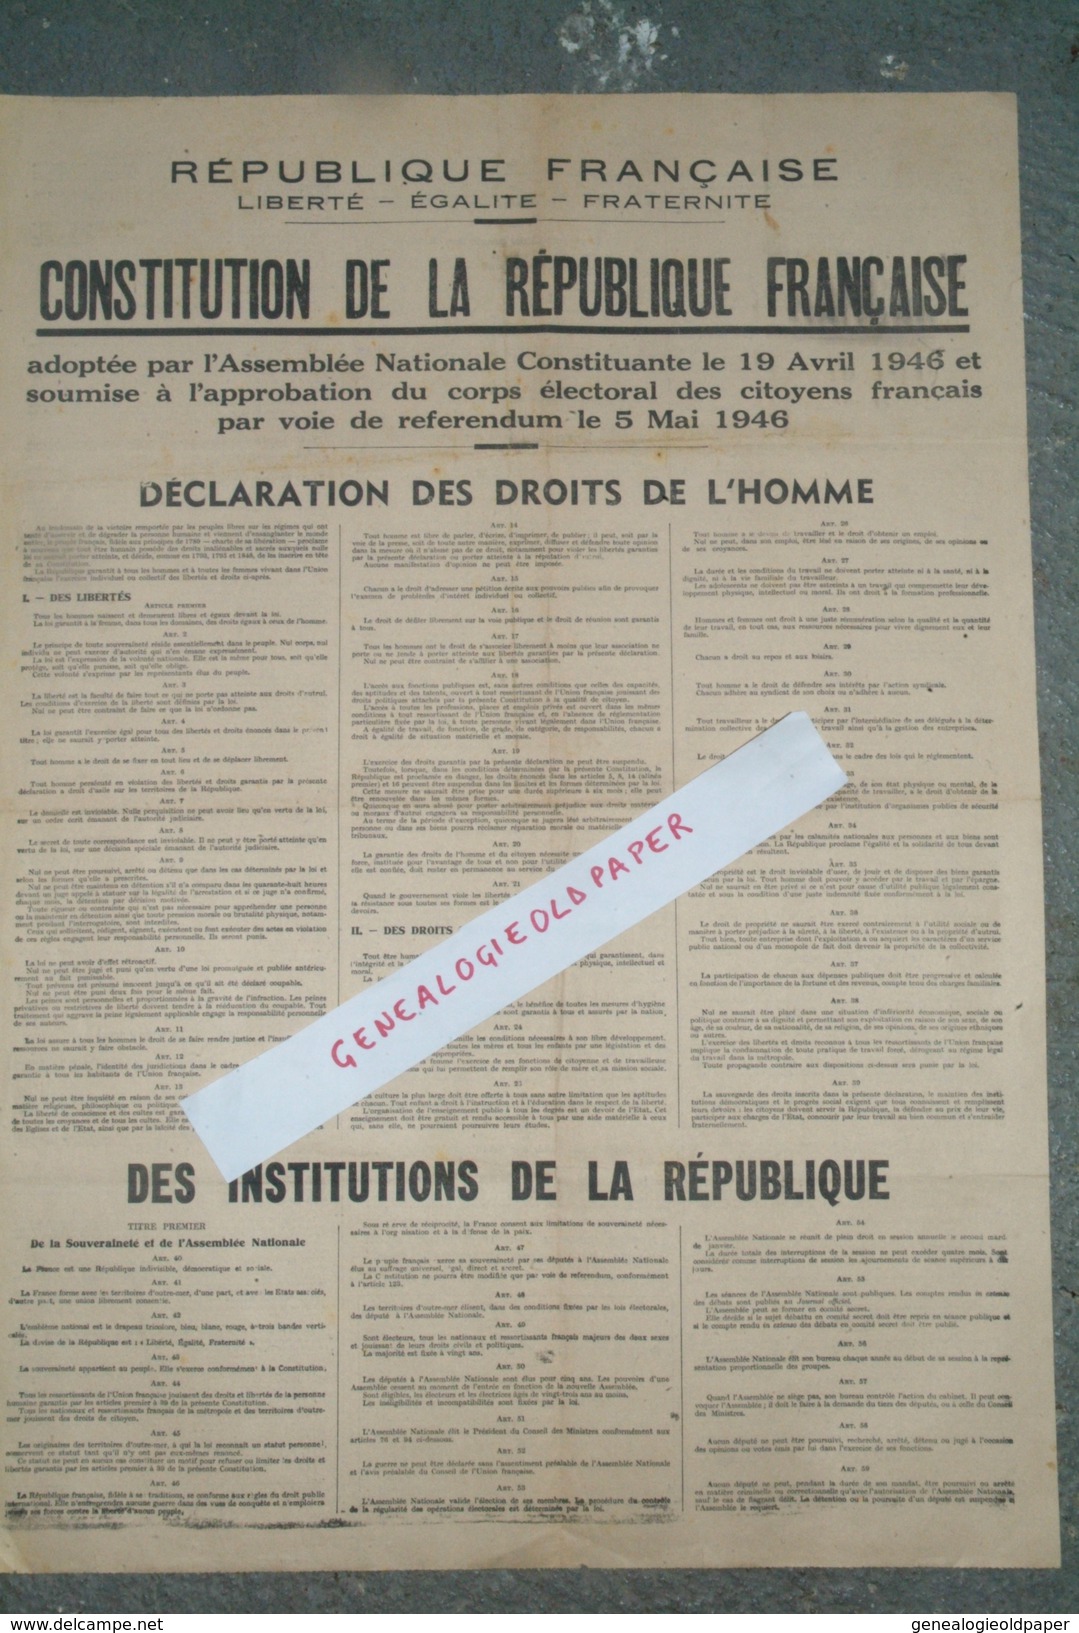 POLITIQUE - AFFICHE CONSTITUTION REPUBLIQUE FRANCAISE -ASSEMBLEE NATIONALE 19 AVRIL 1946- REFERENDUM 5 MAI 1946-DROITS - Posters